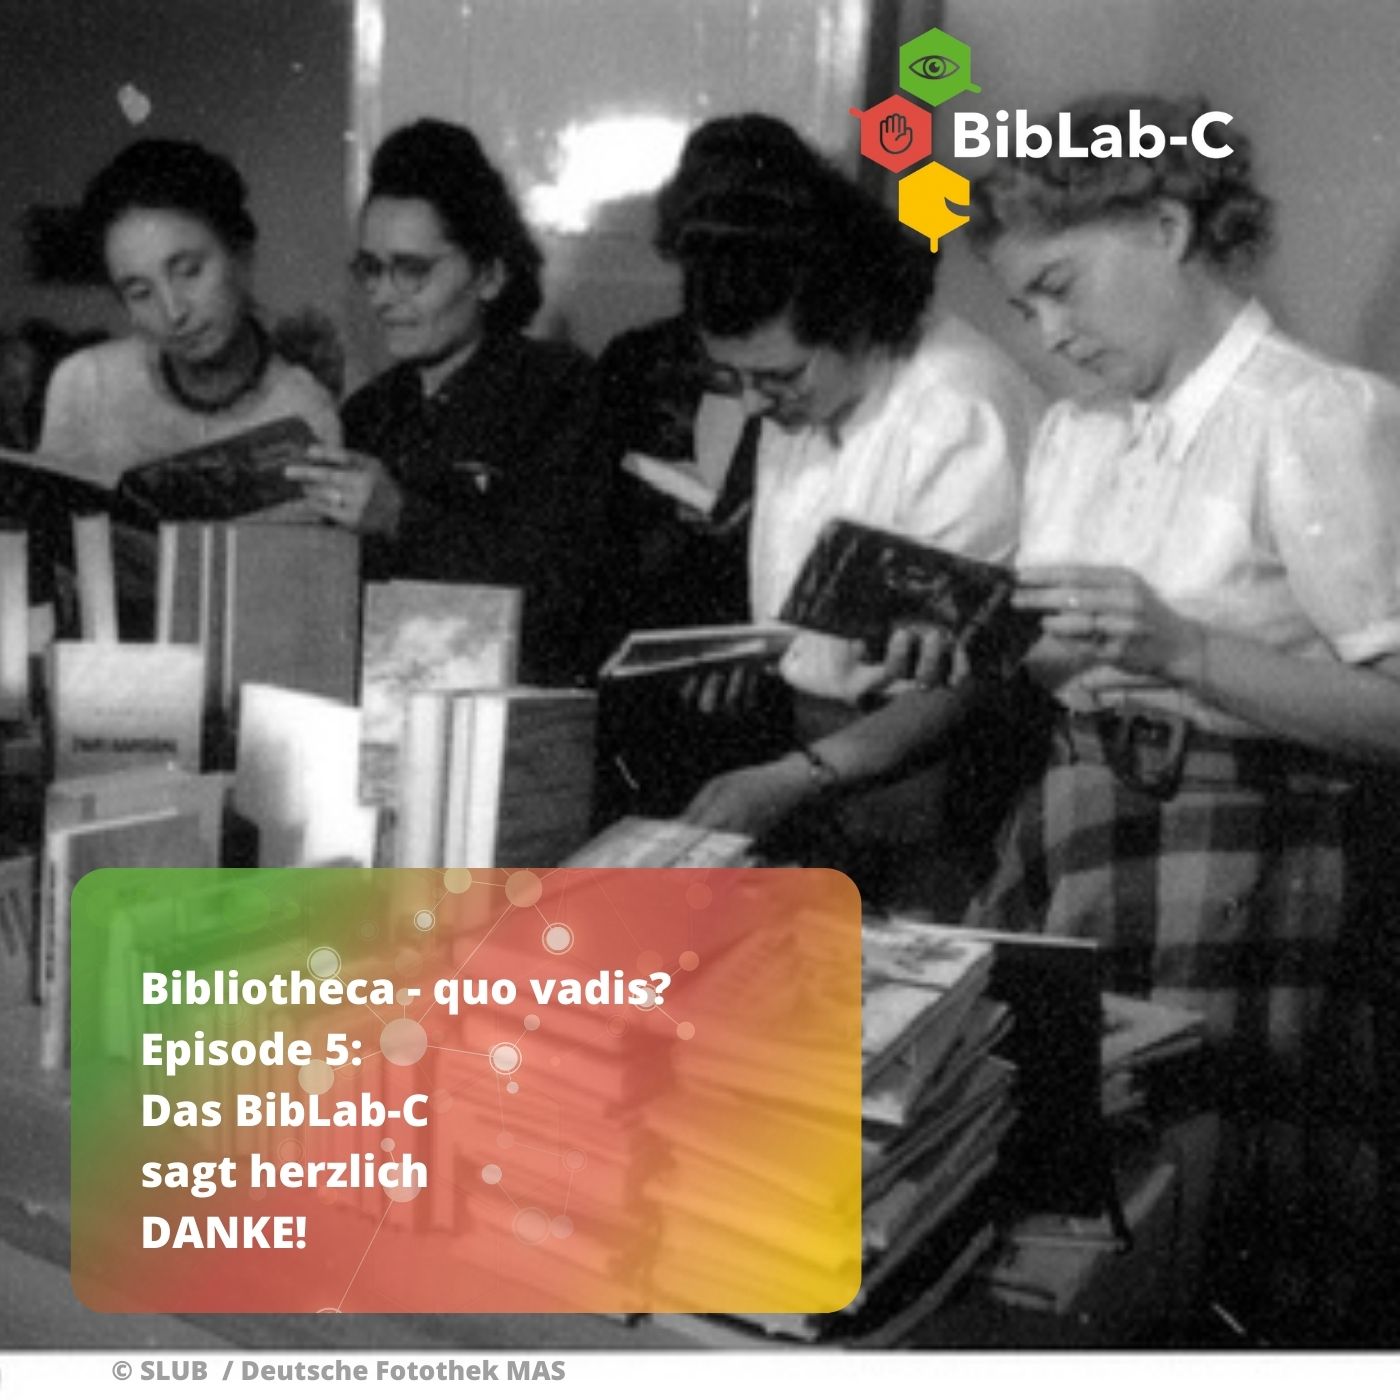 Archivbild in schwarz weiß, 5 Frauen schauen in Bücher